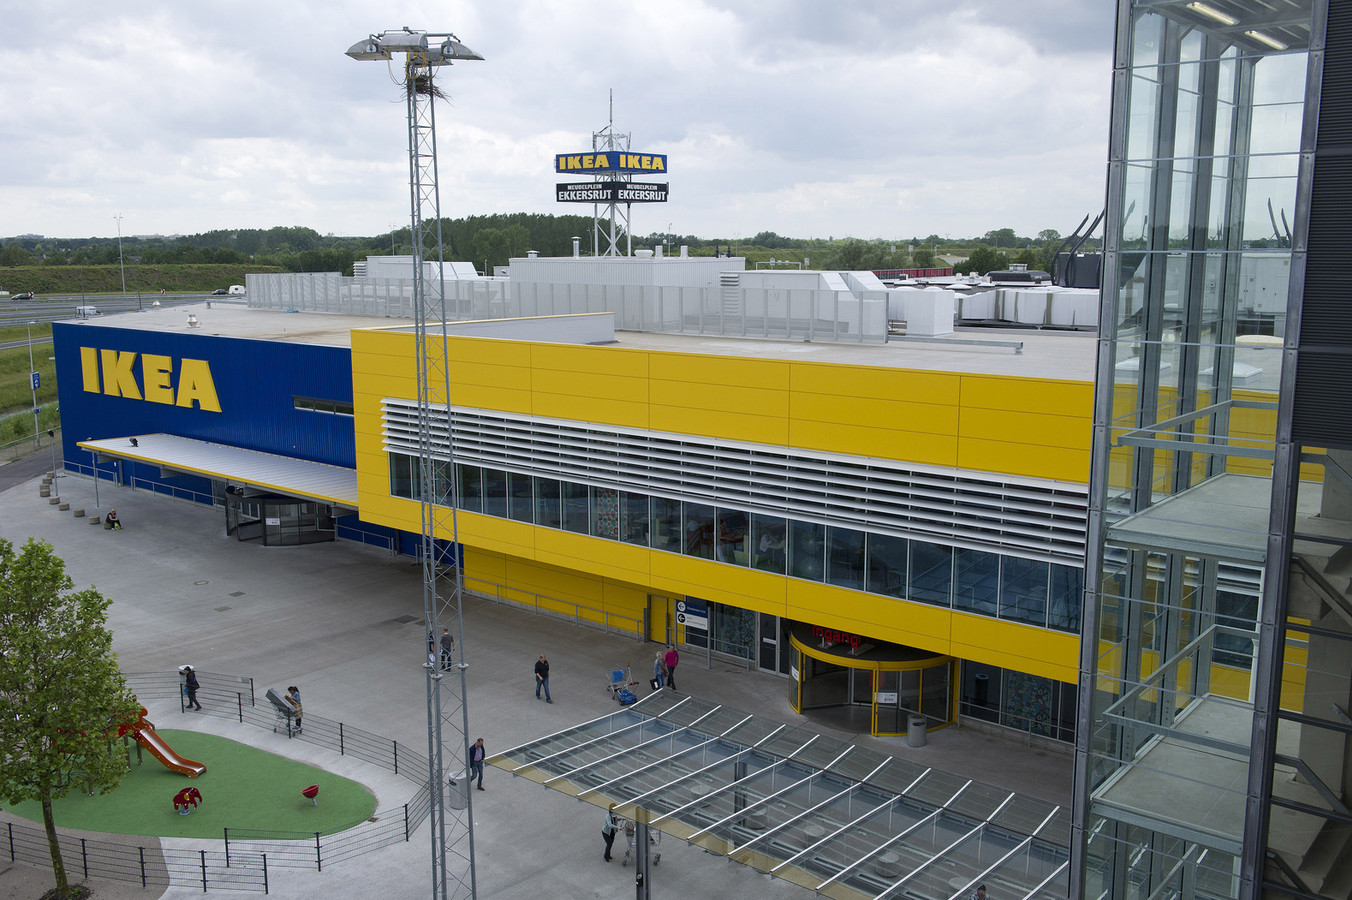 Antecedent pistool klein Ikea in Eindhoven weert 18.000 verstoppertje spelers | Foto | AD.nl